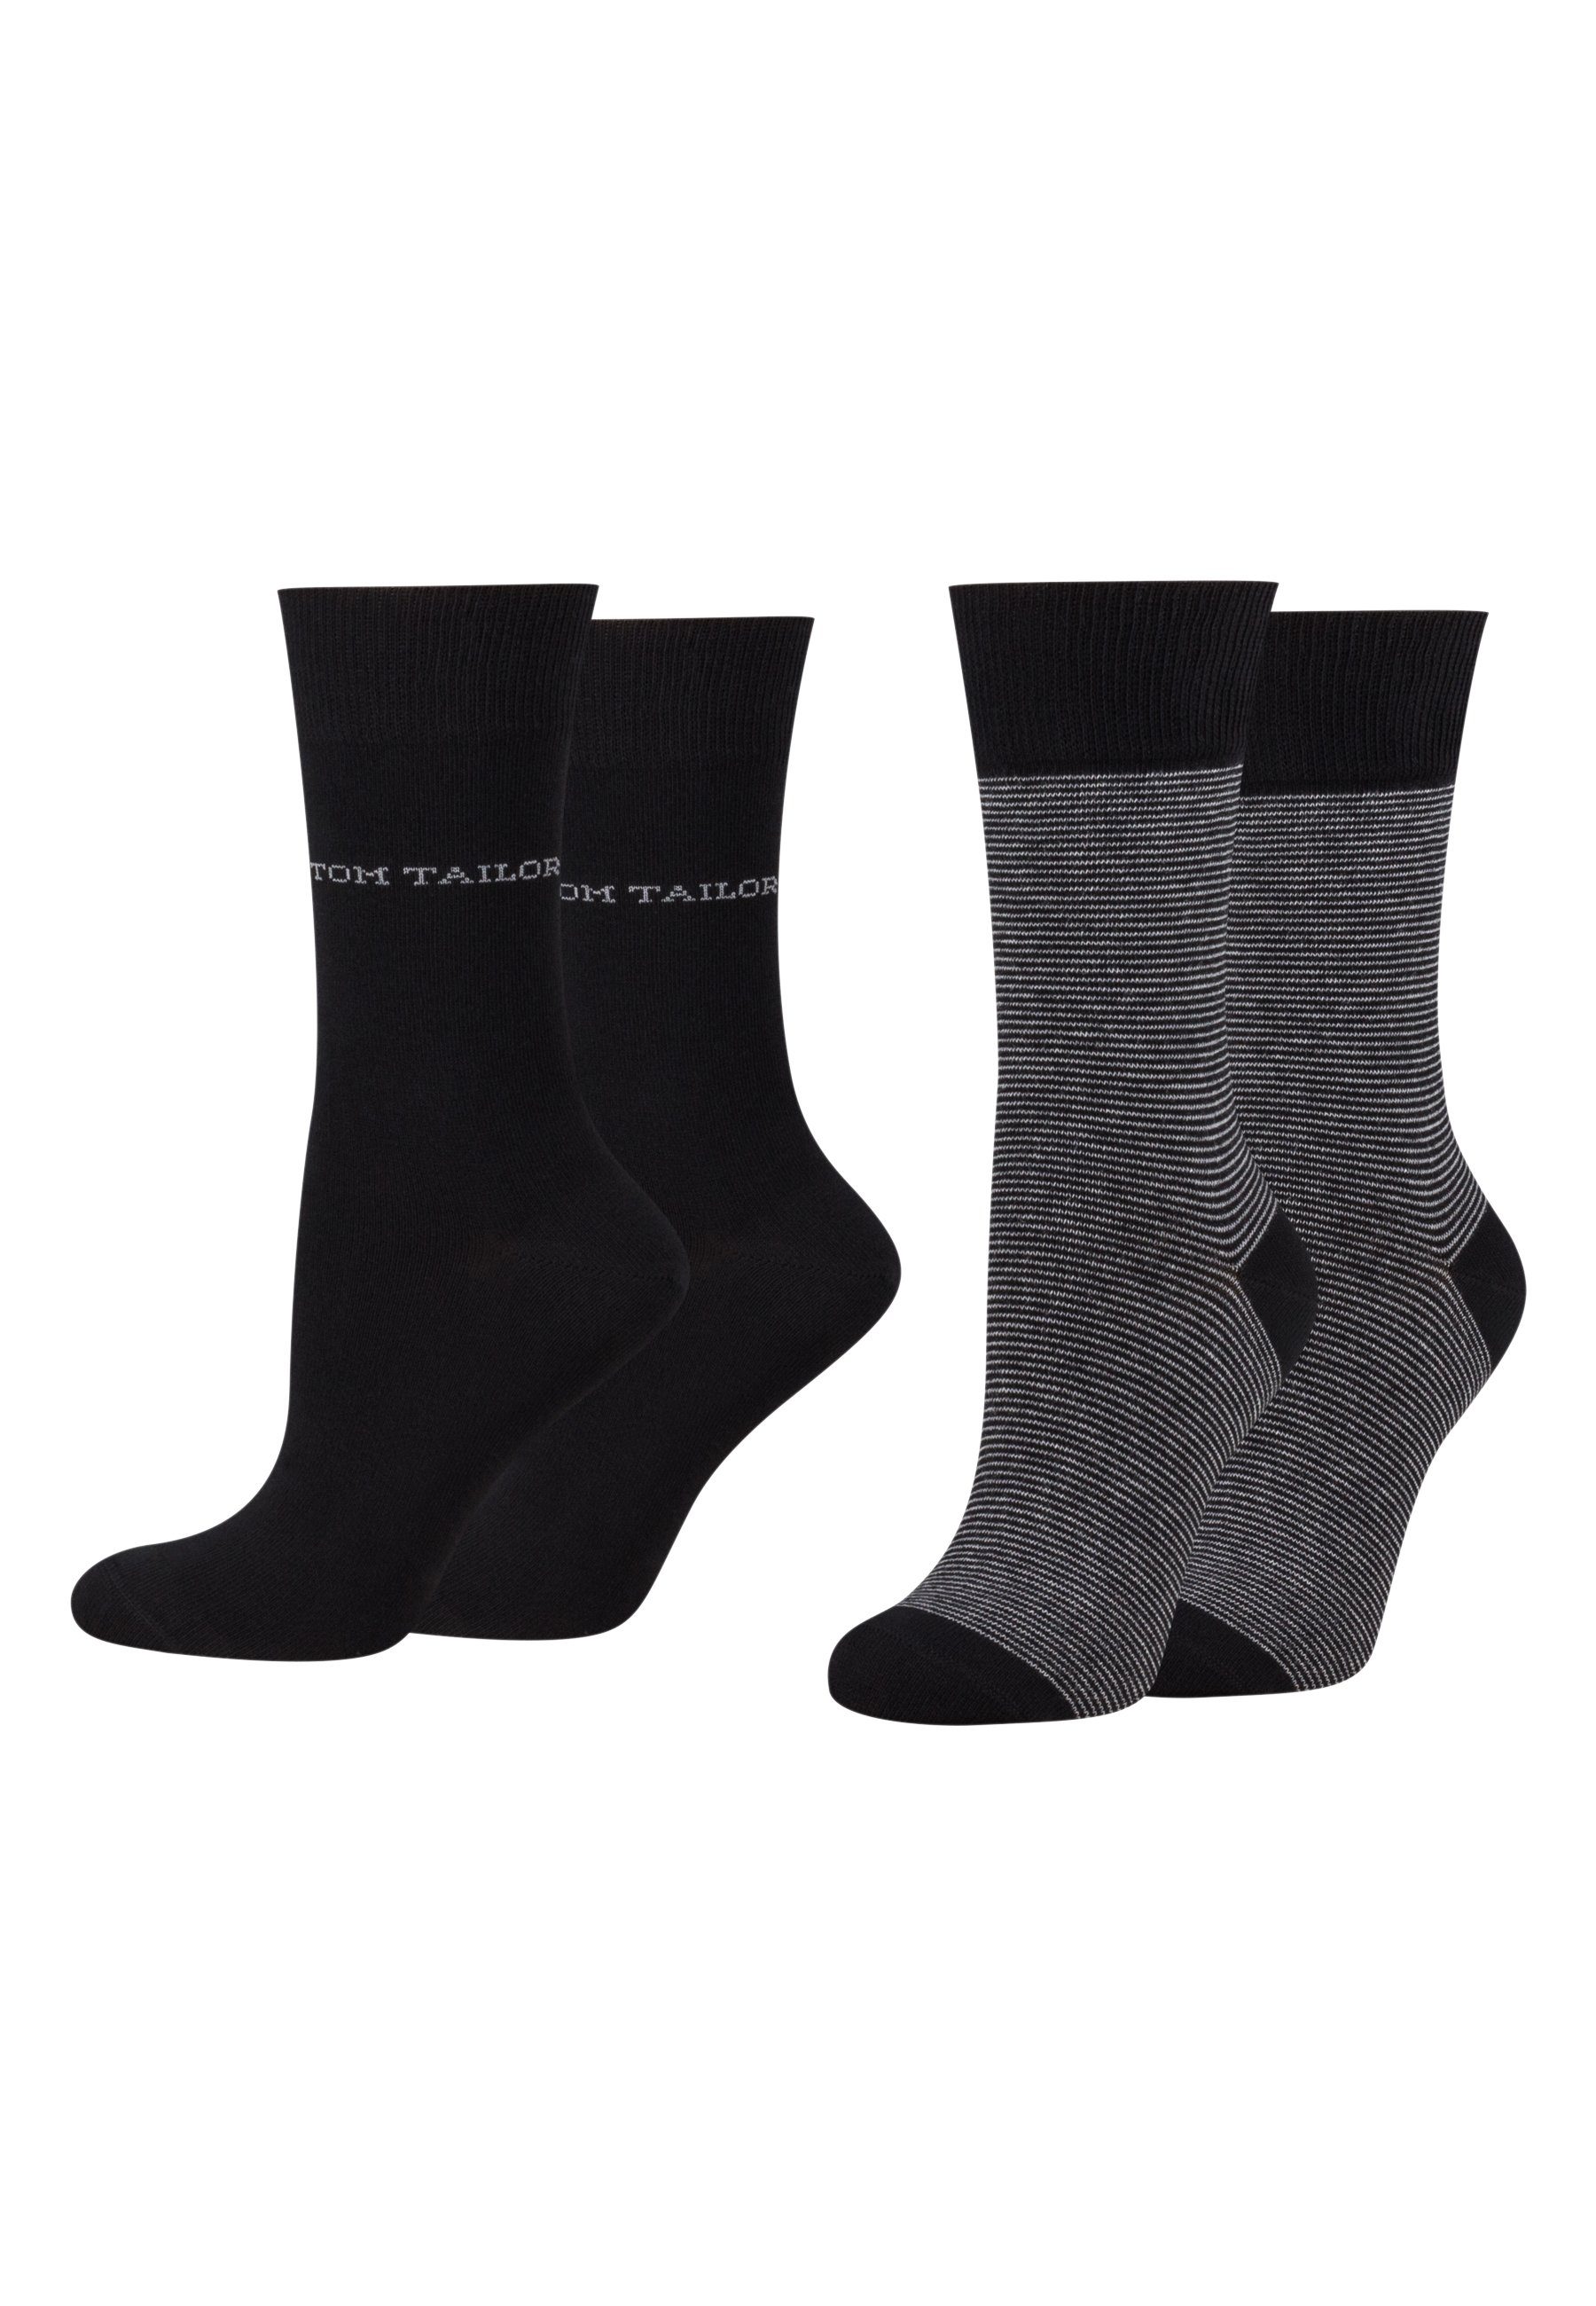 9521610042_4 Socken TAILOR 4 basic Paar black socks Tom TOM Tailor 2er stripe women